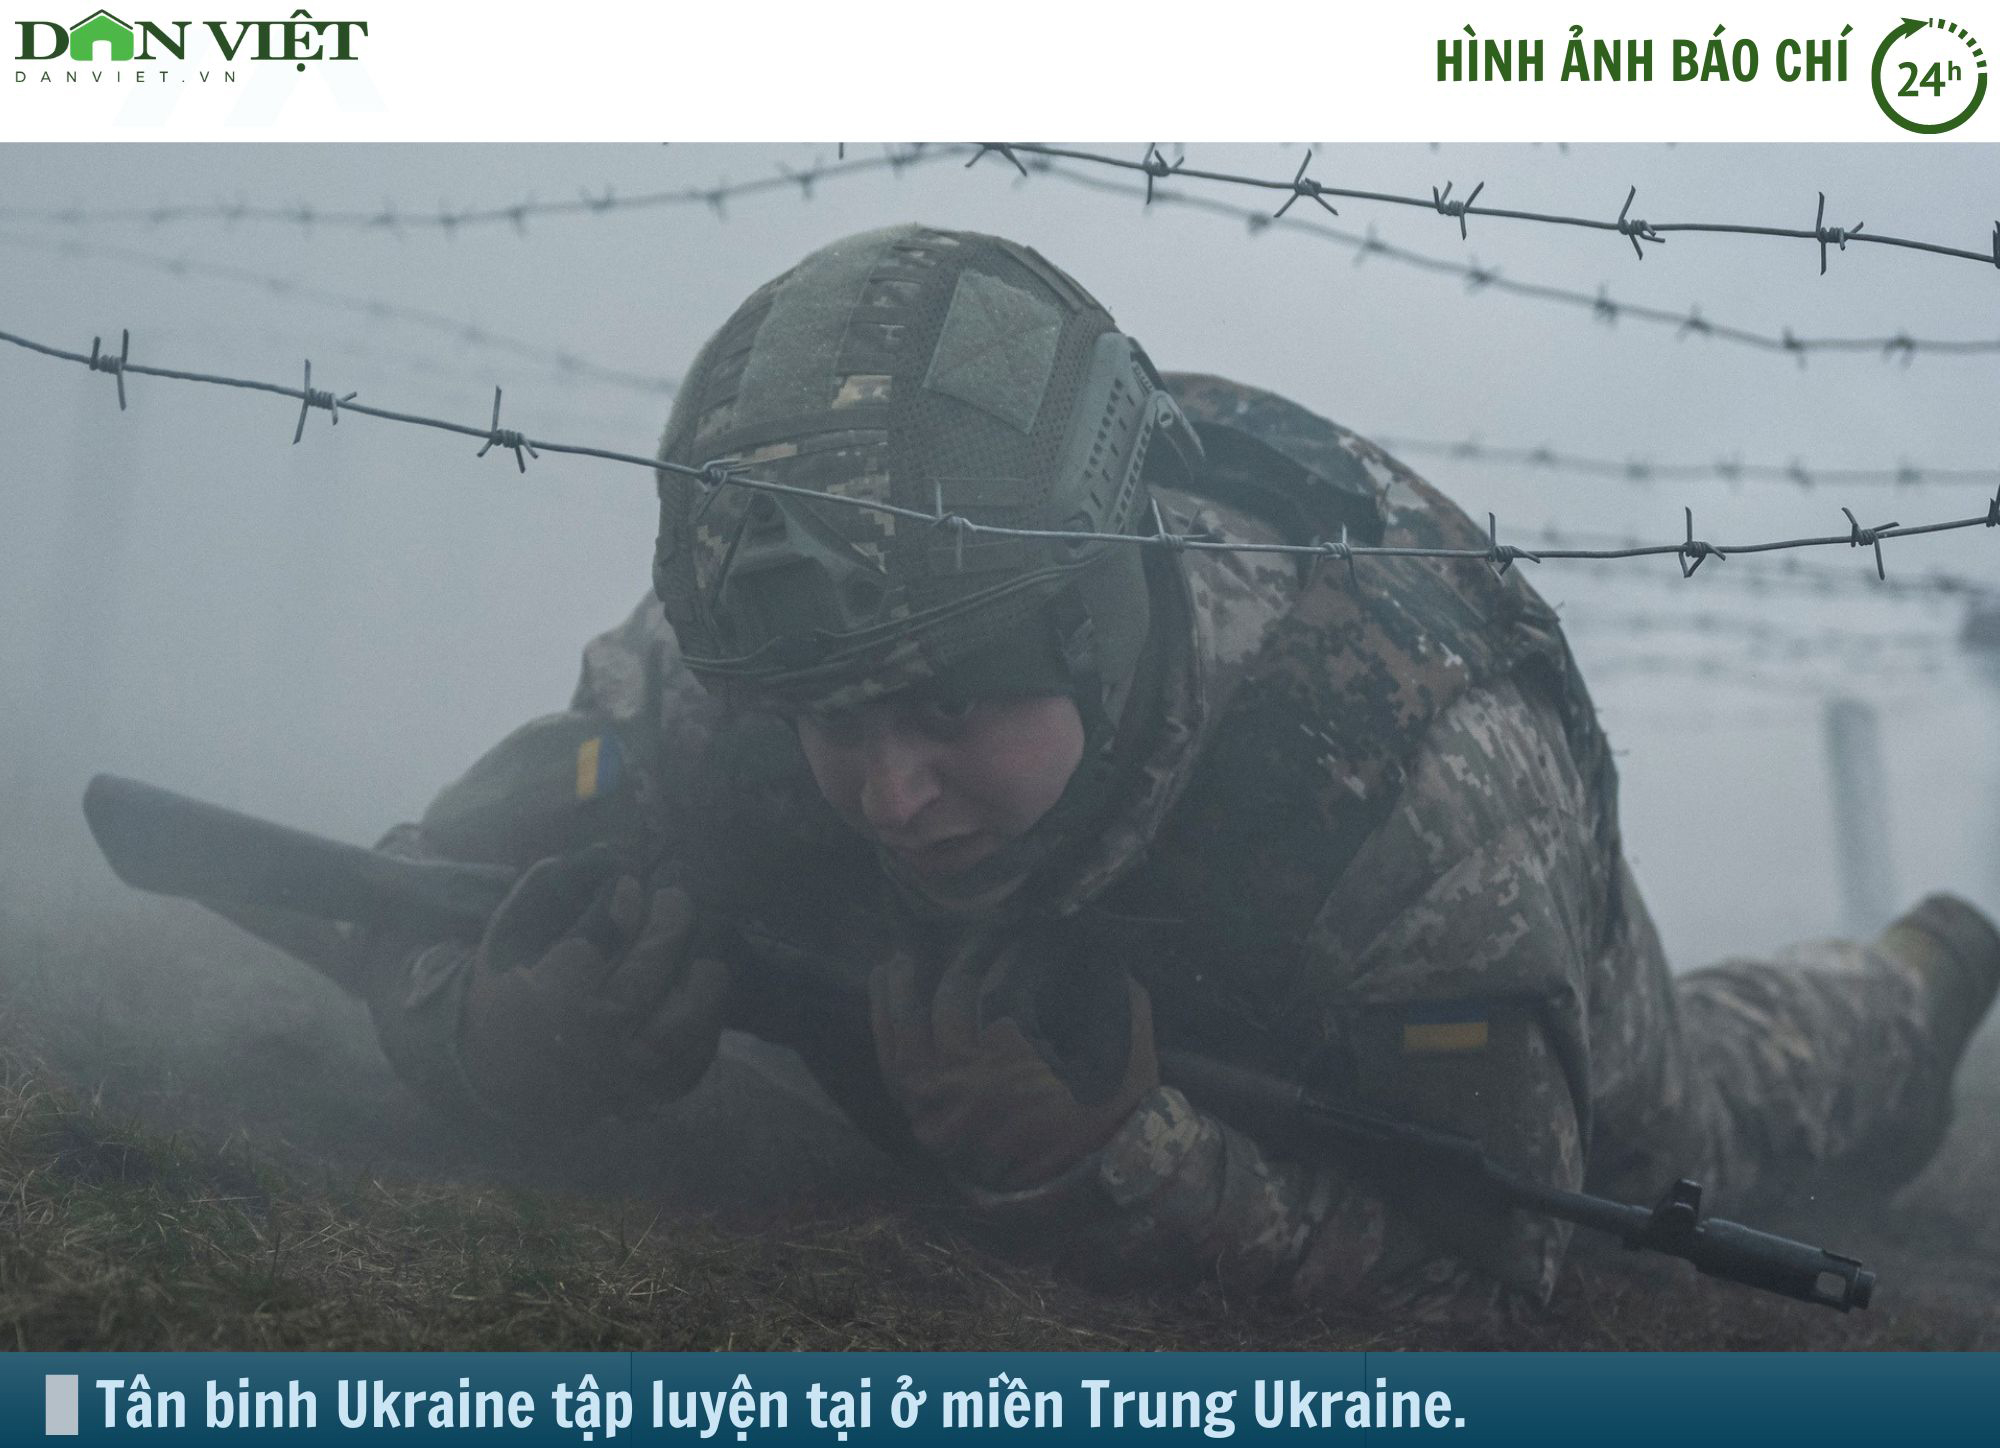 Hình ảnh báo chí 24h: Tân binh Ukraine căng mình tập luyện- Ảnh 1.